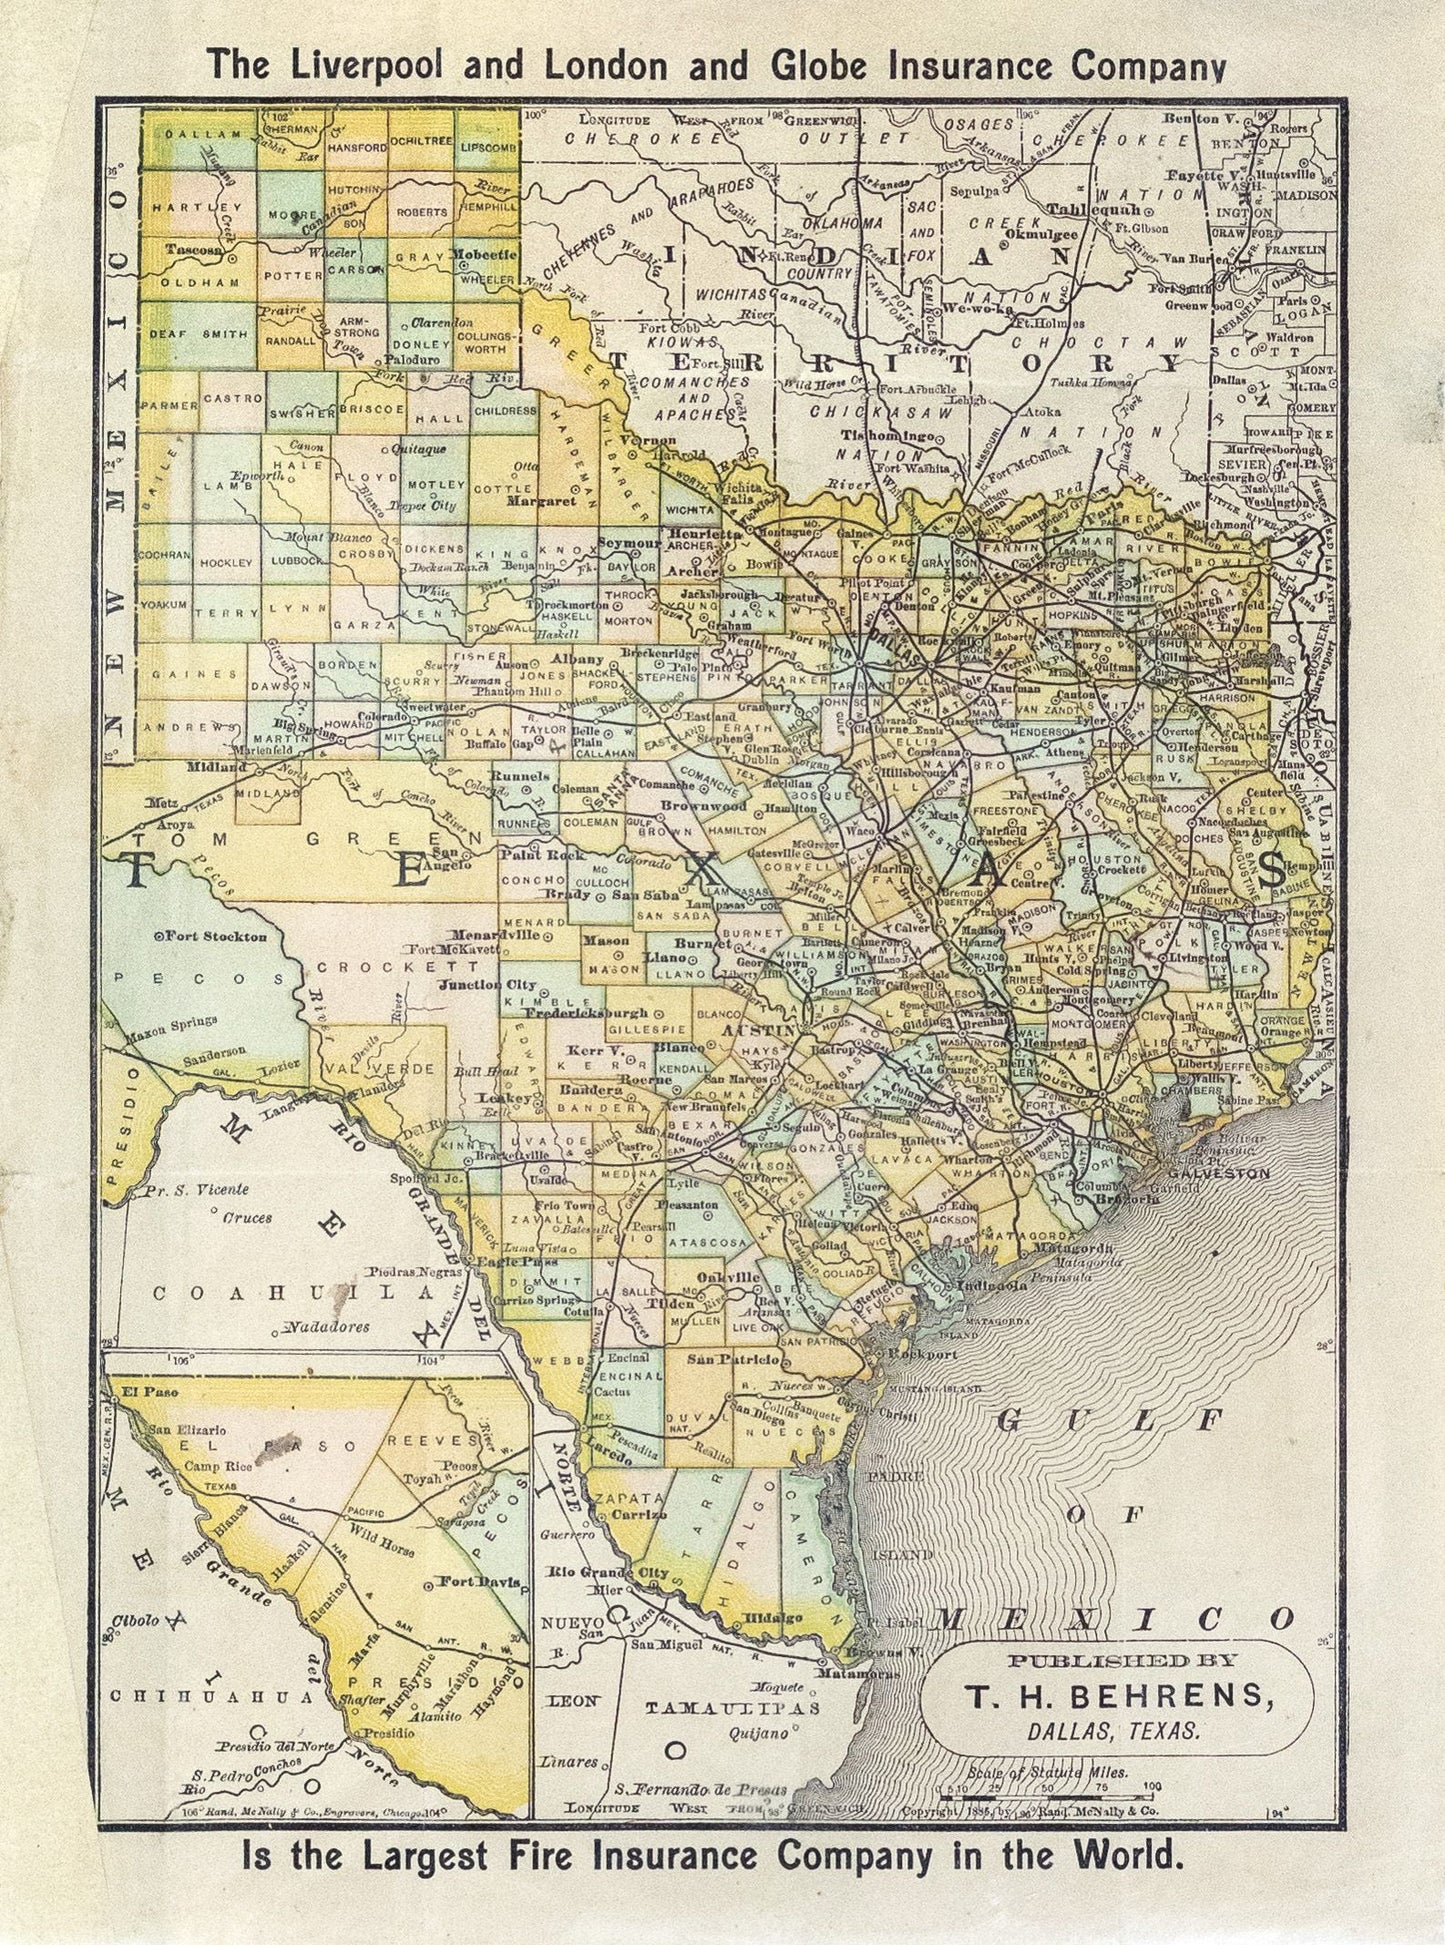 Behrens, T.H..  Texas.  Dallas, Texas; 1886